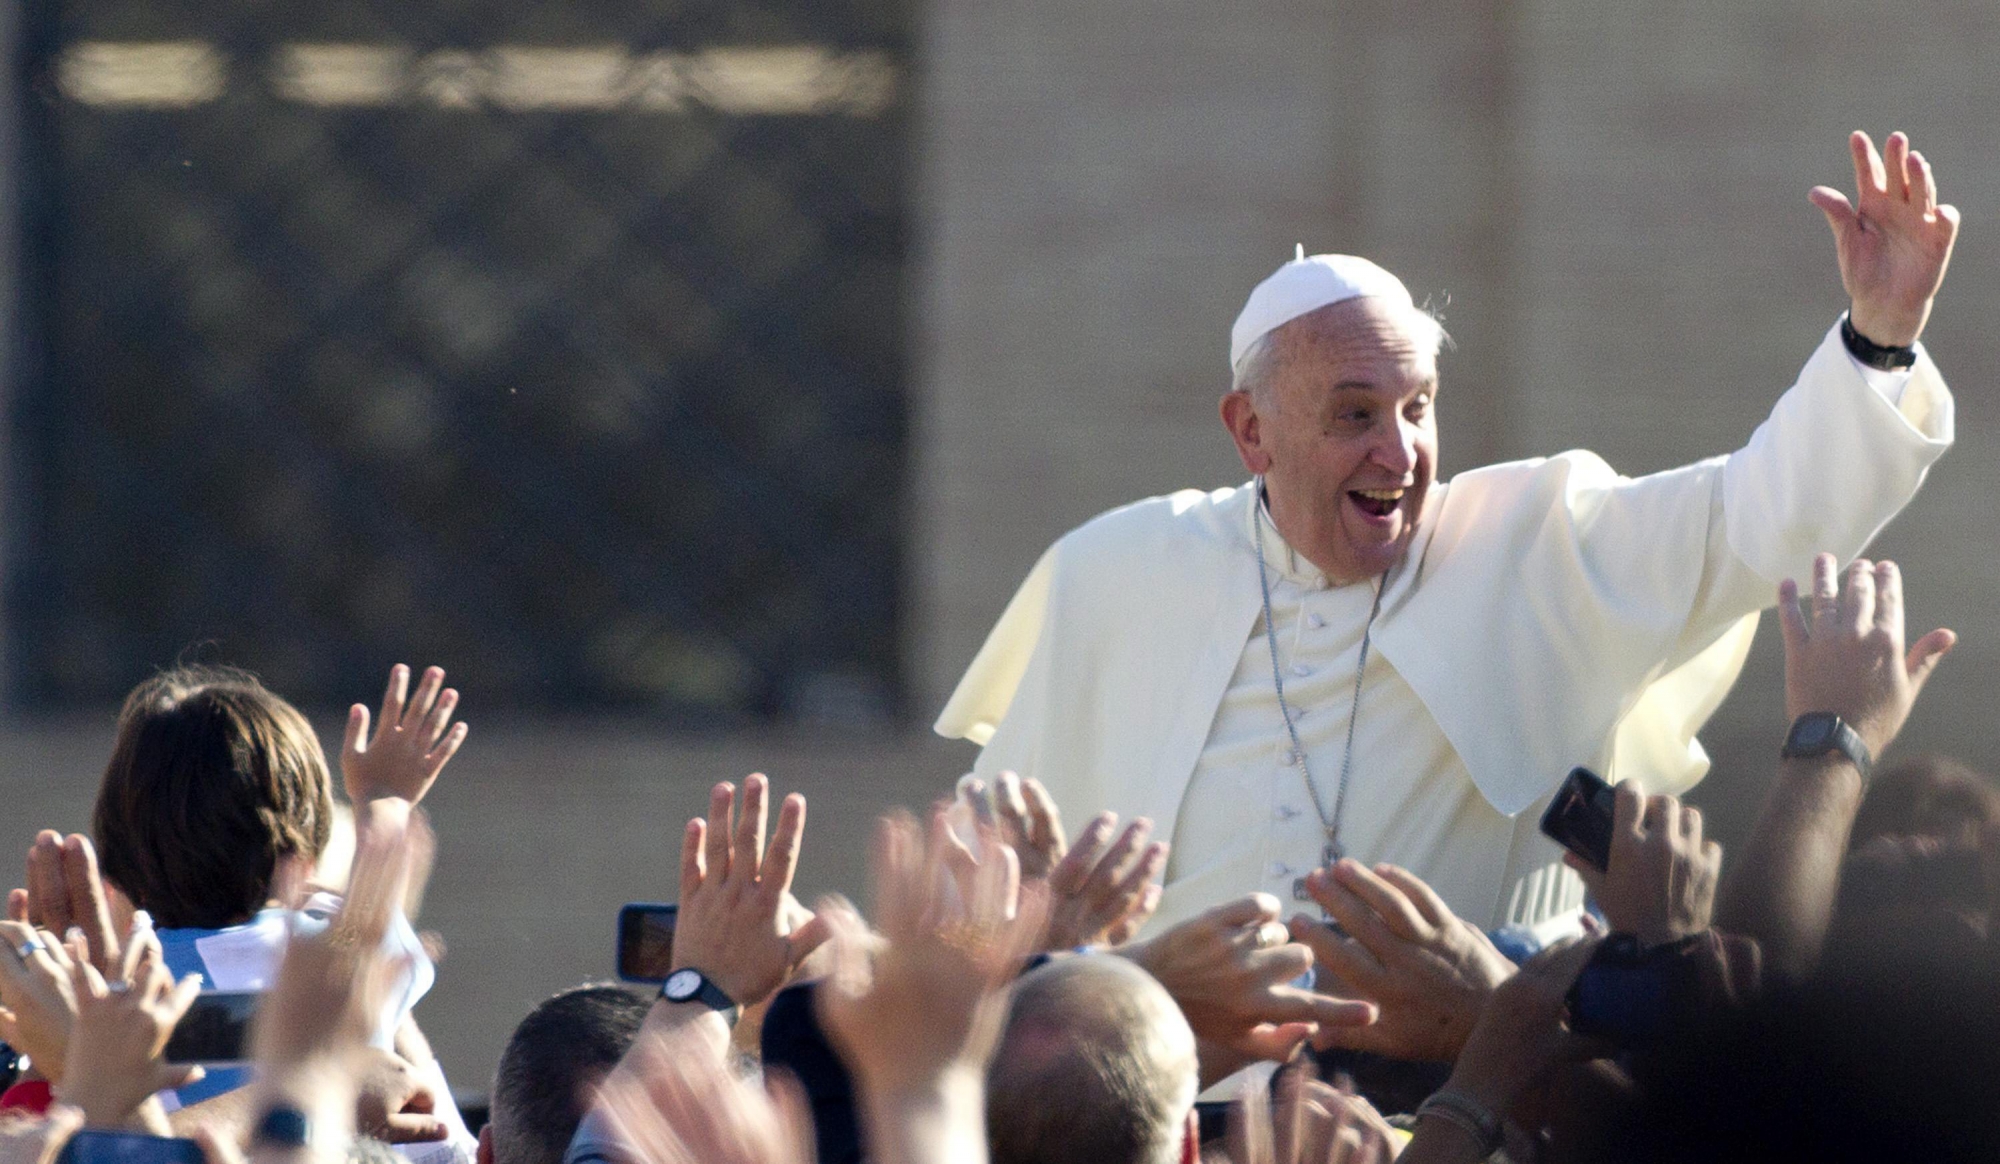 La visite du pape François à Genève jeudi suscite beaucoup d'intérêt chez les catholiques romands.